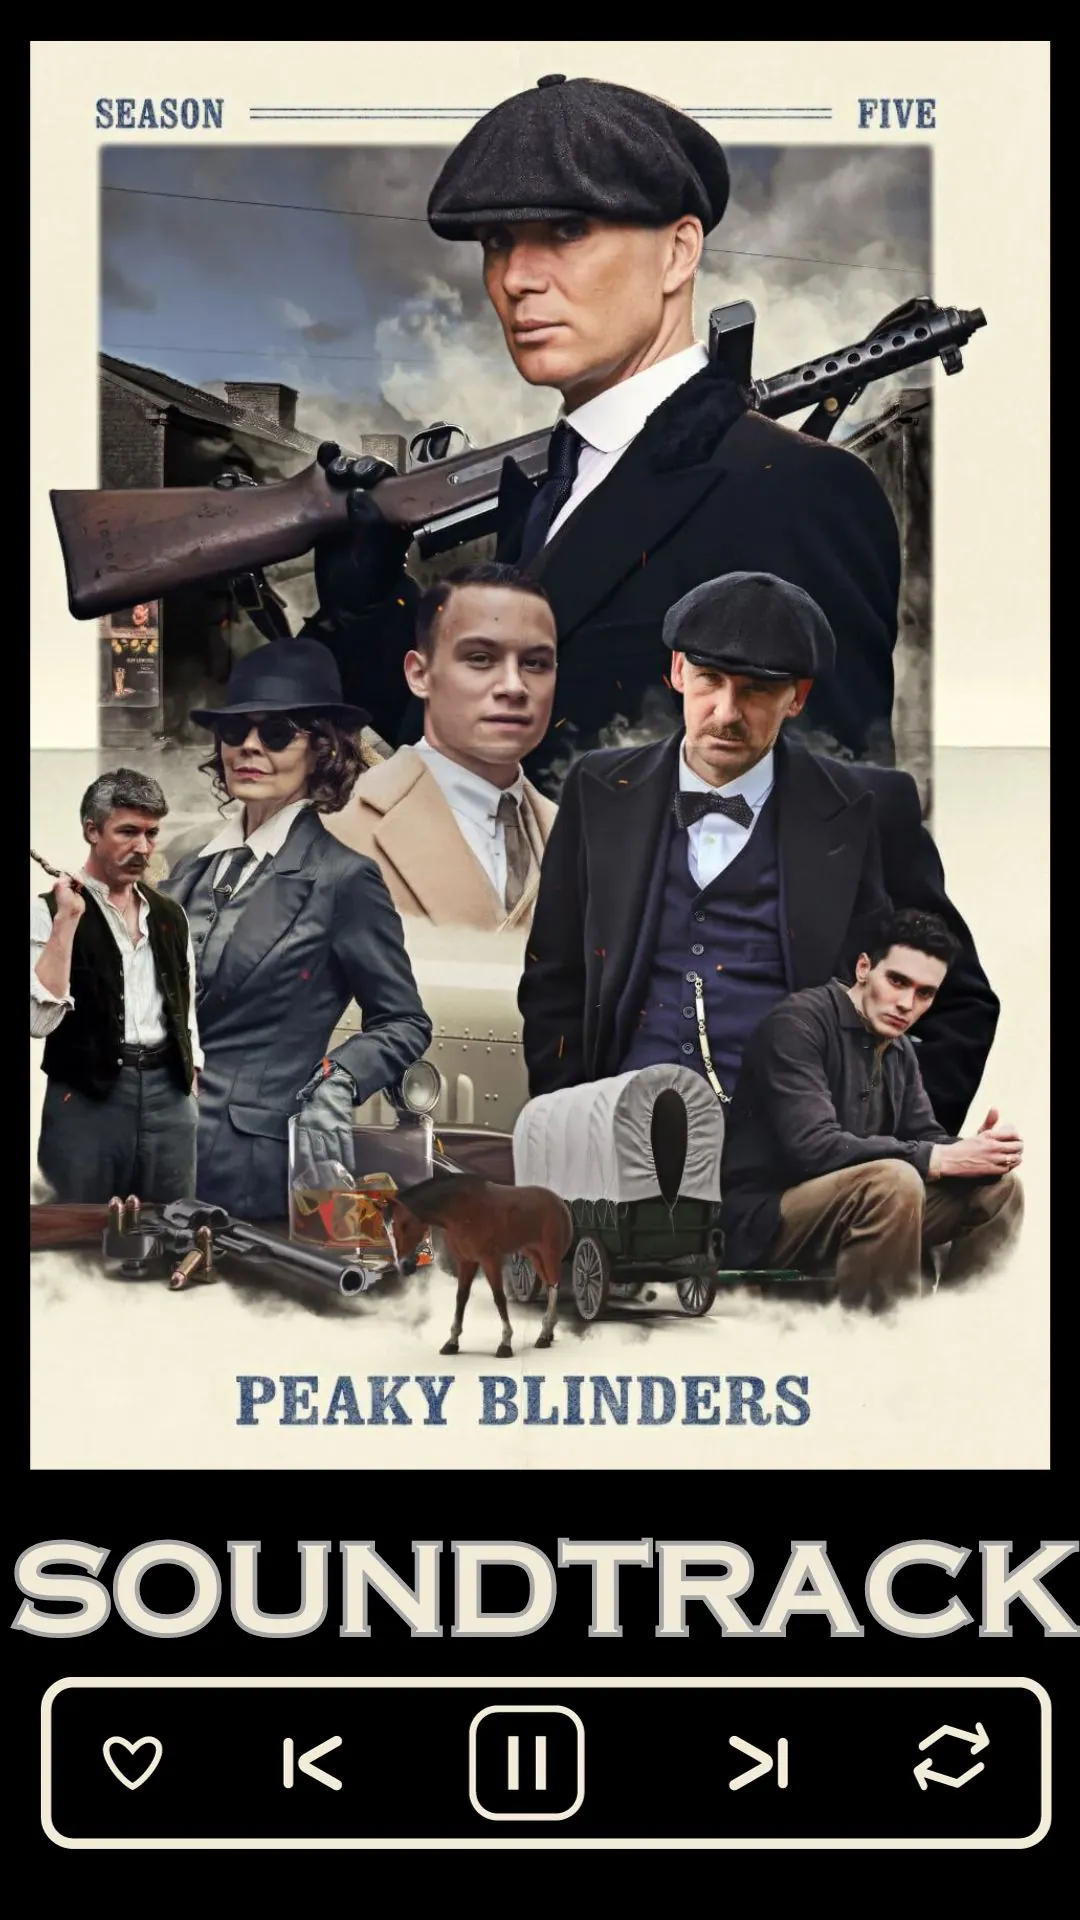 Peaky Blinders Season 5 Soundtrack